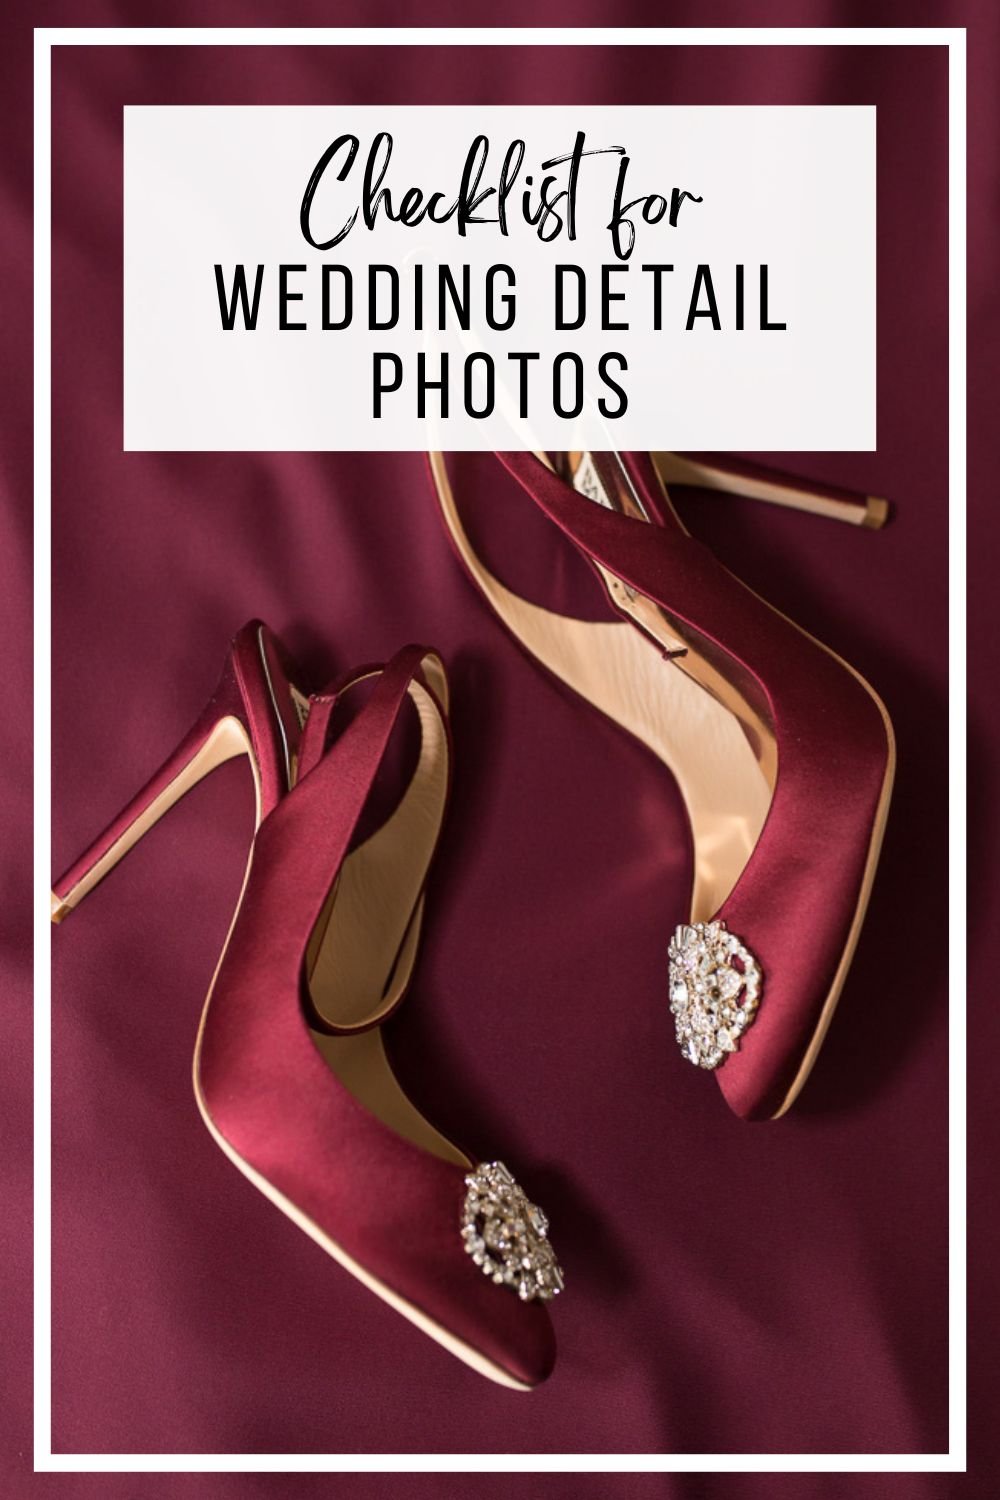 wedding detail photos checklist 8.jpg